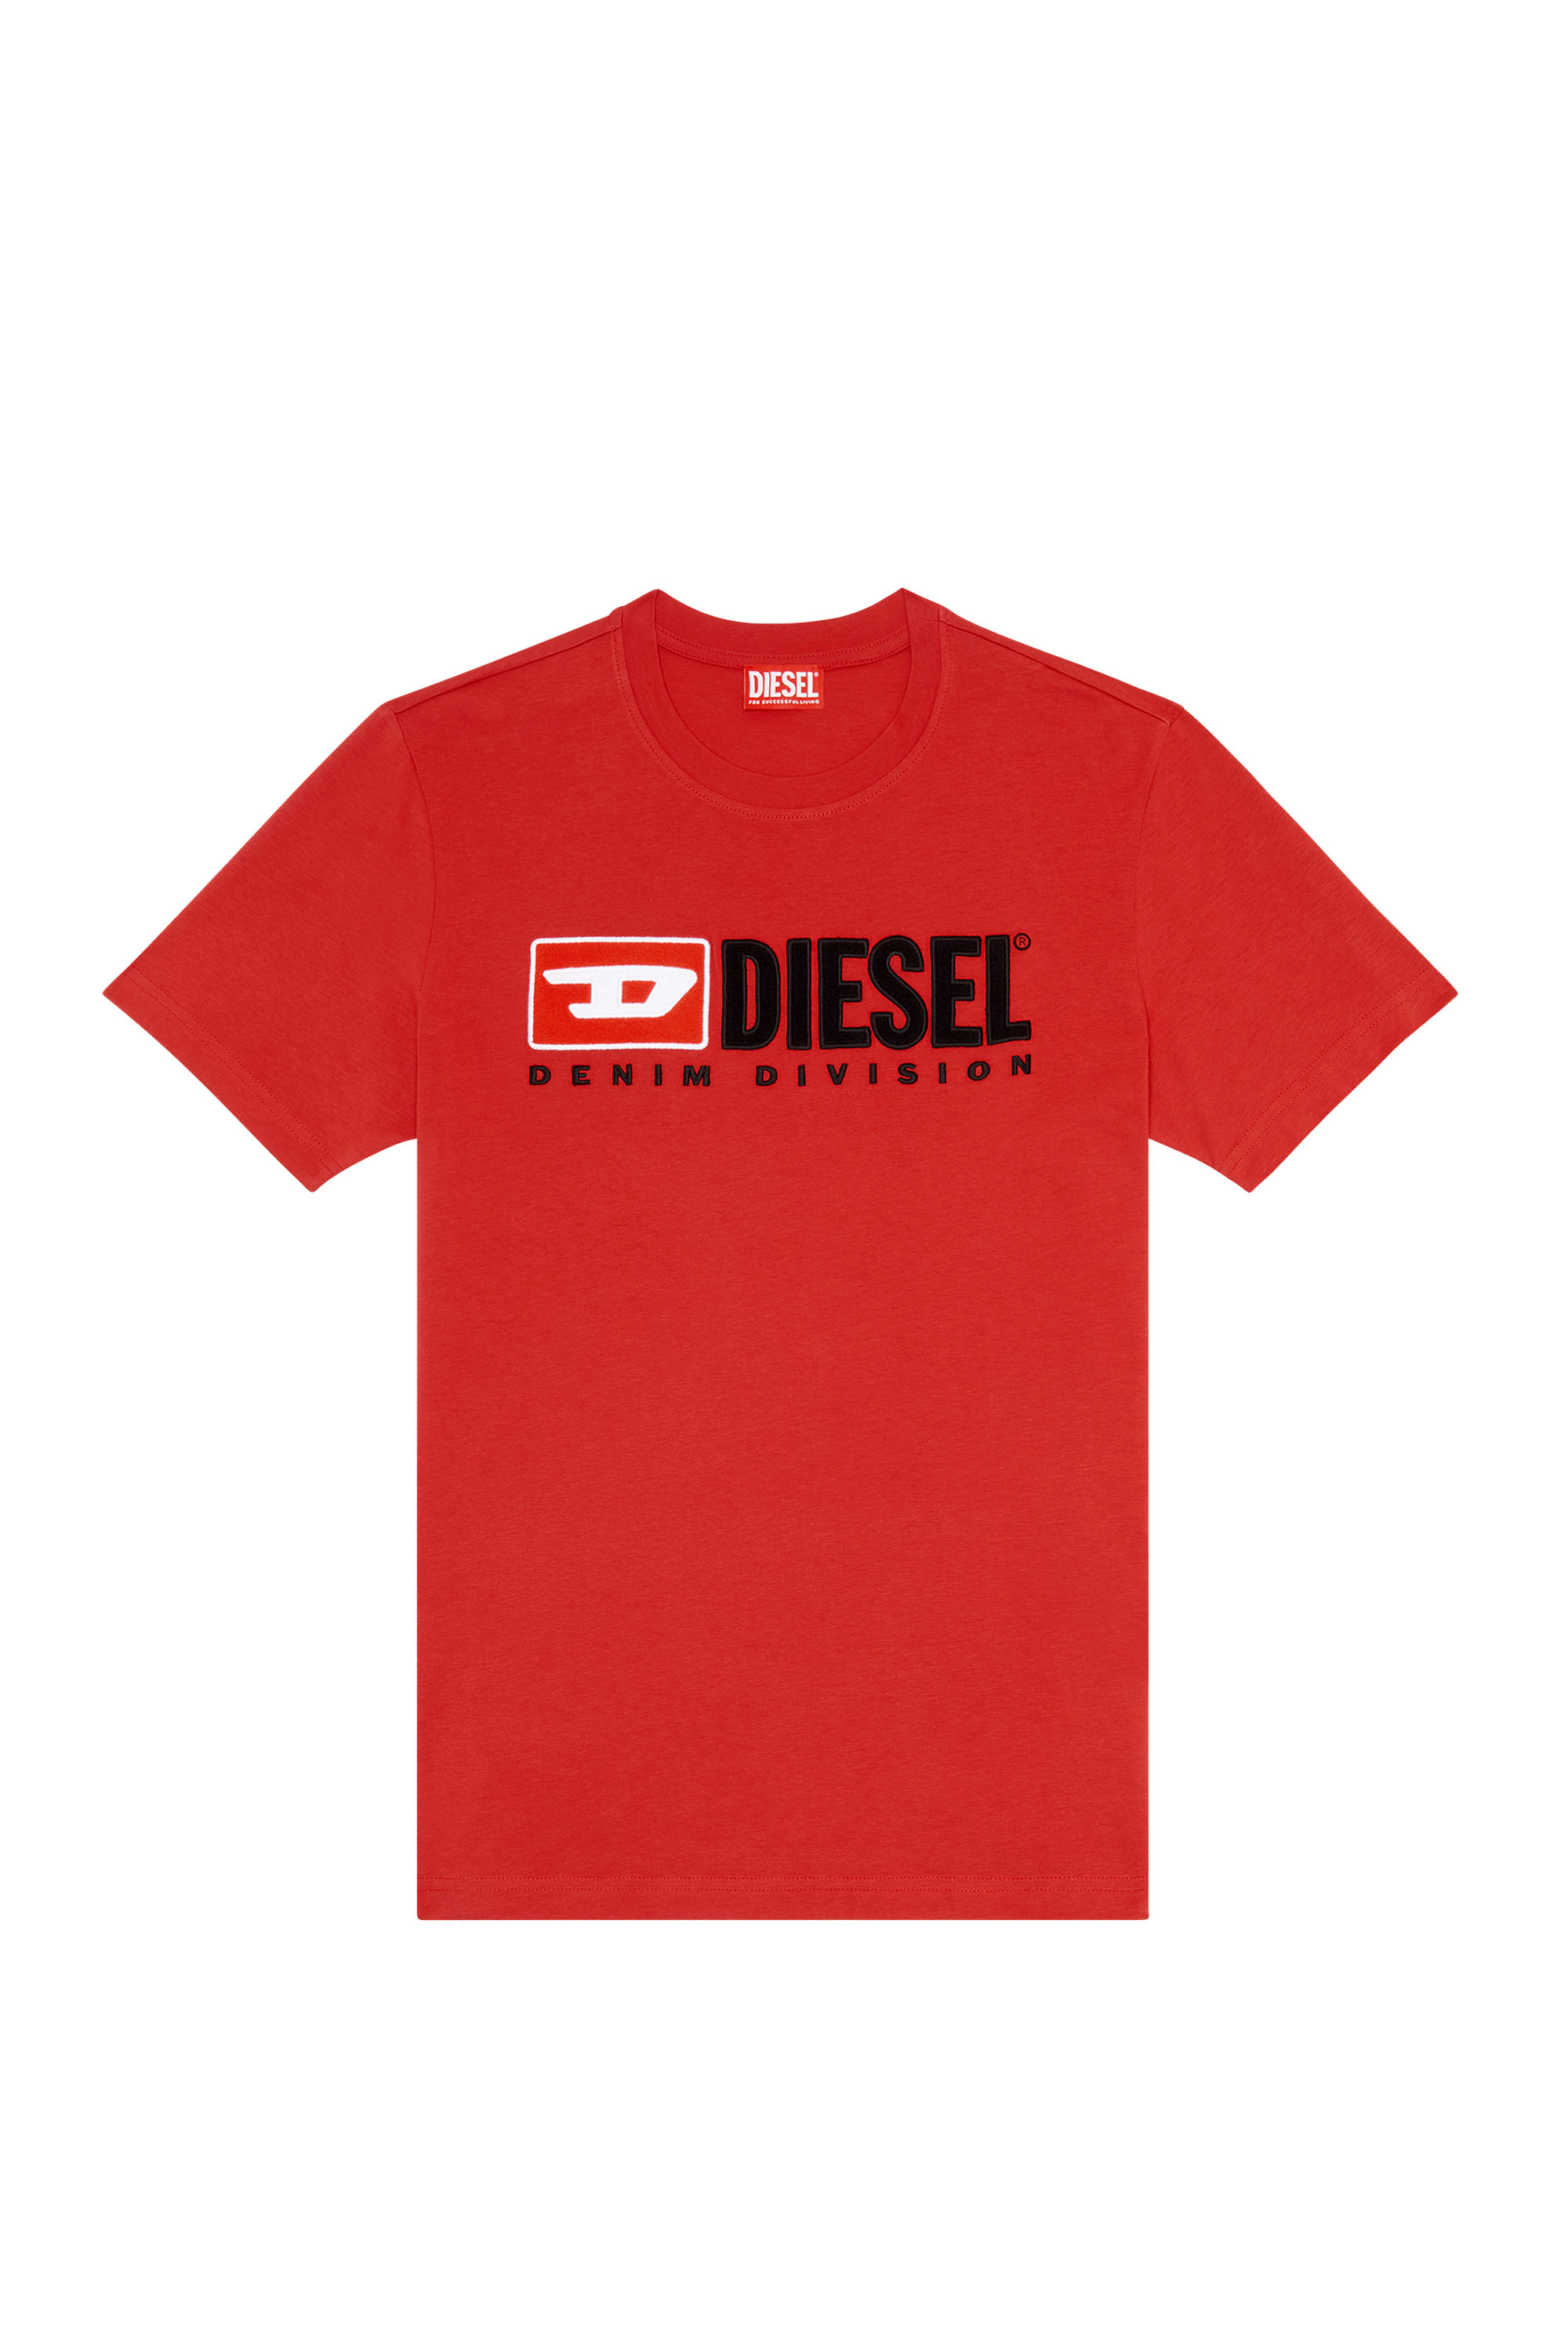 Diesel - T-DIEGOR-DIV, Red - Image 3